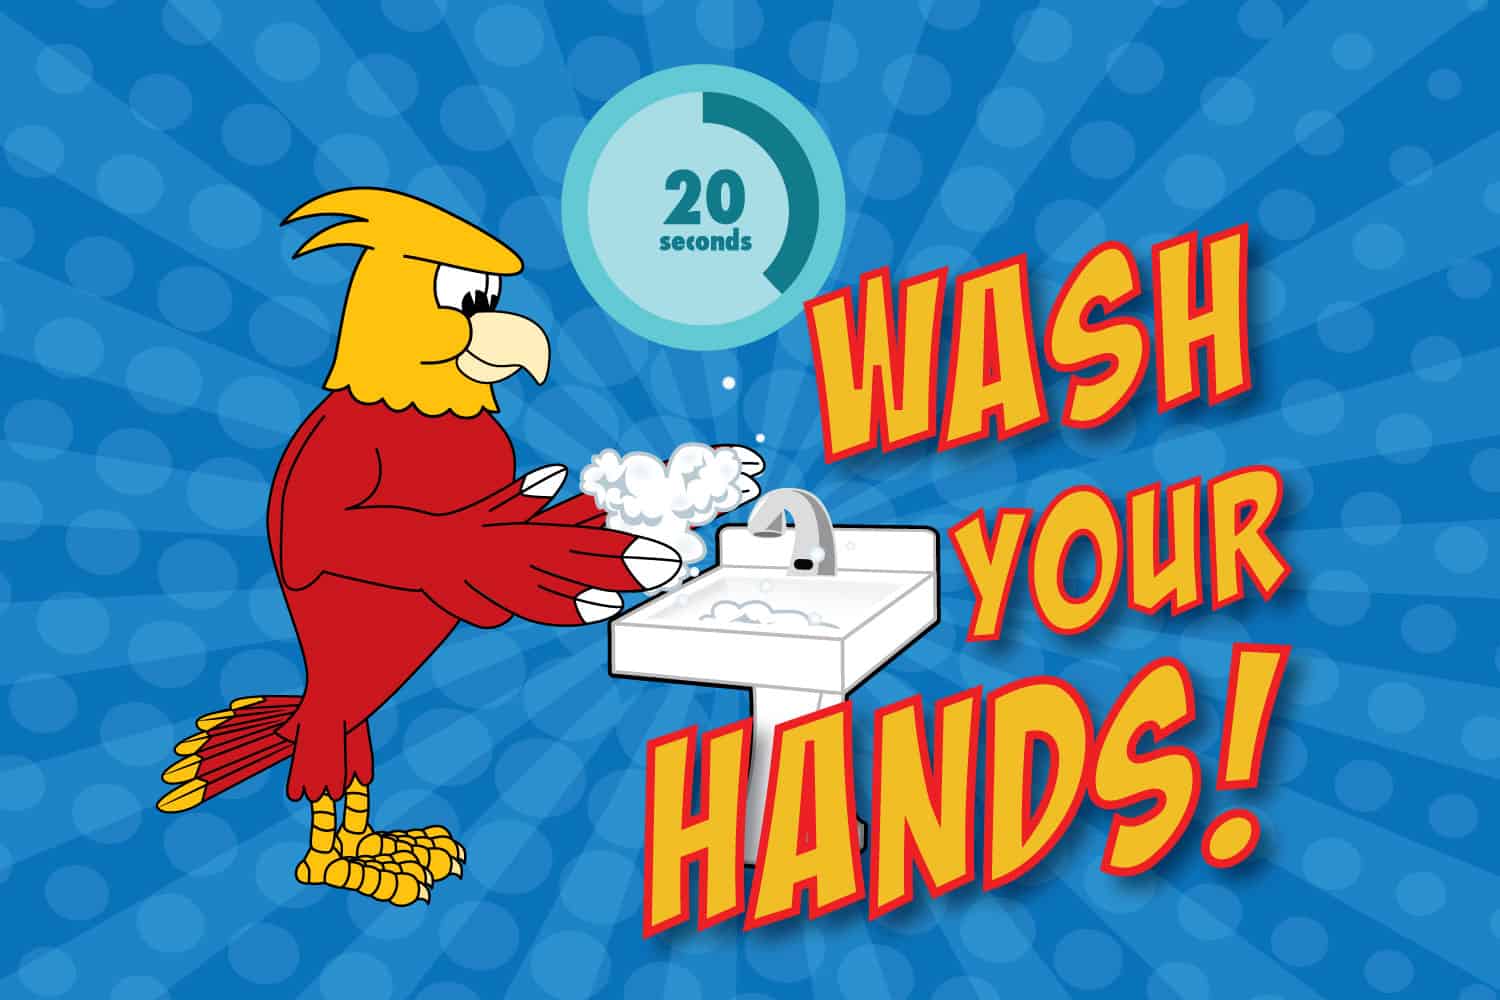 Wash-hands-poster-phoenix